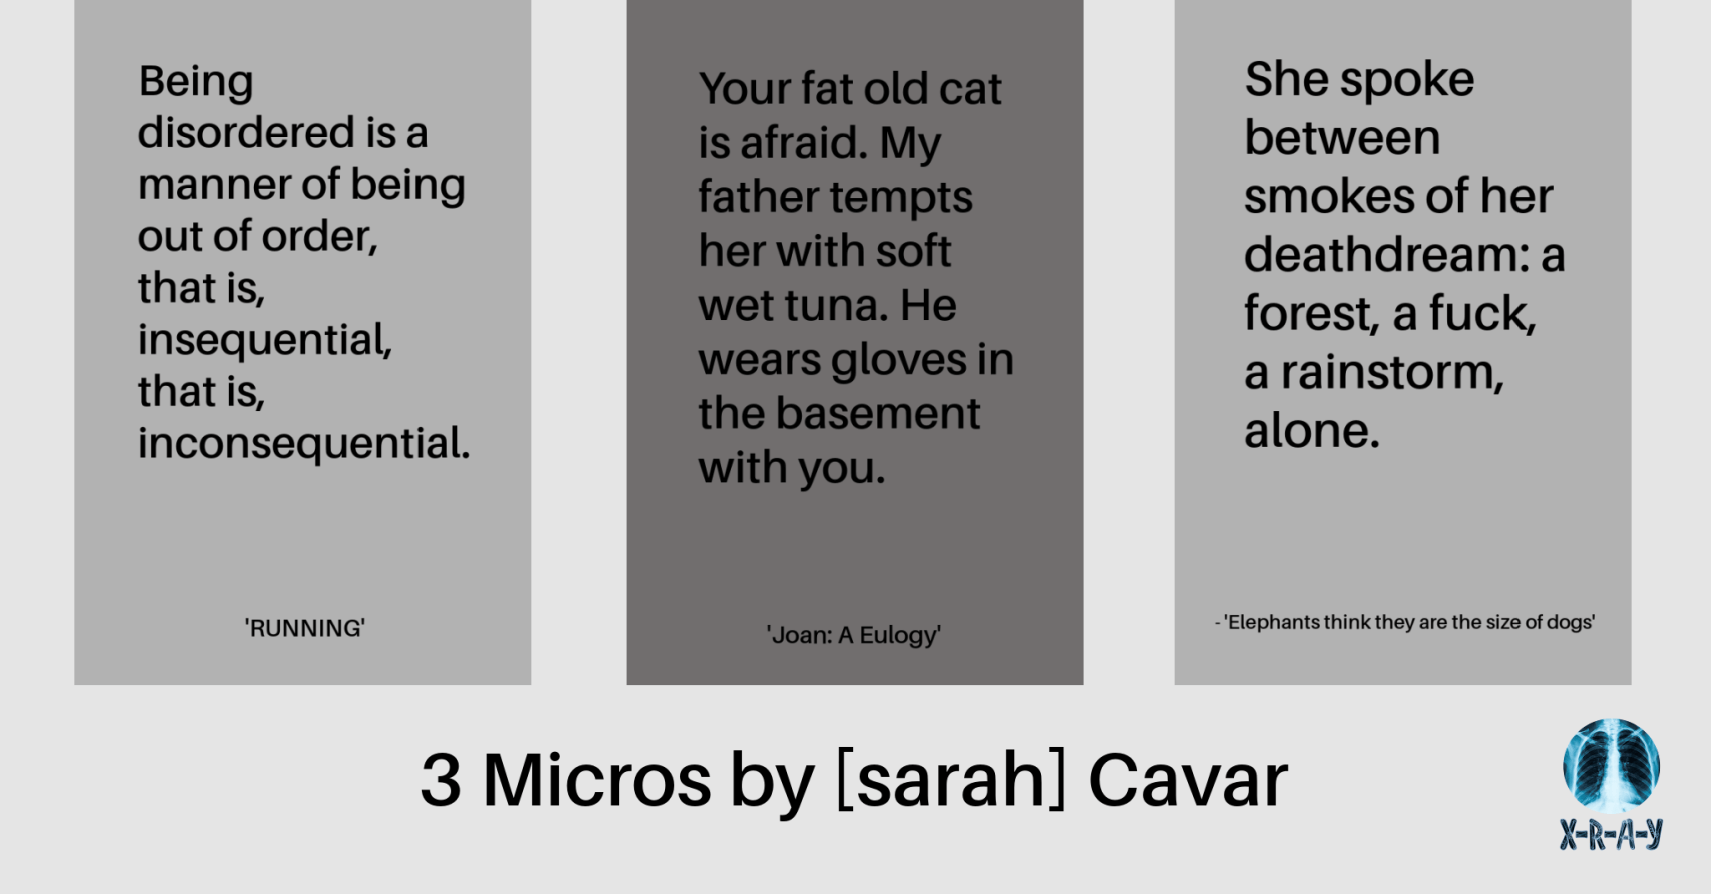 3 MICROS by [sarah] Cavar